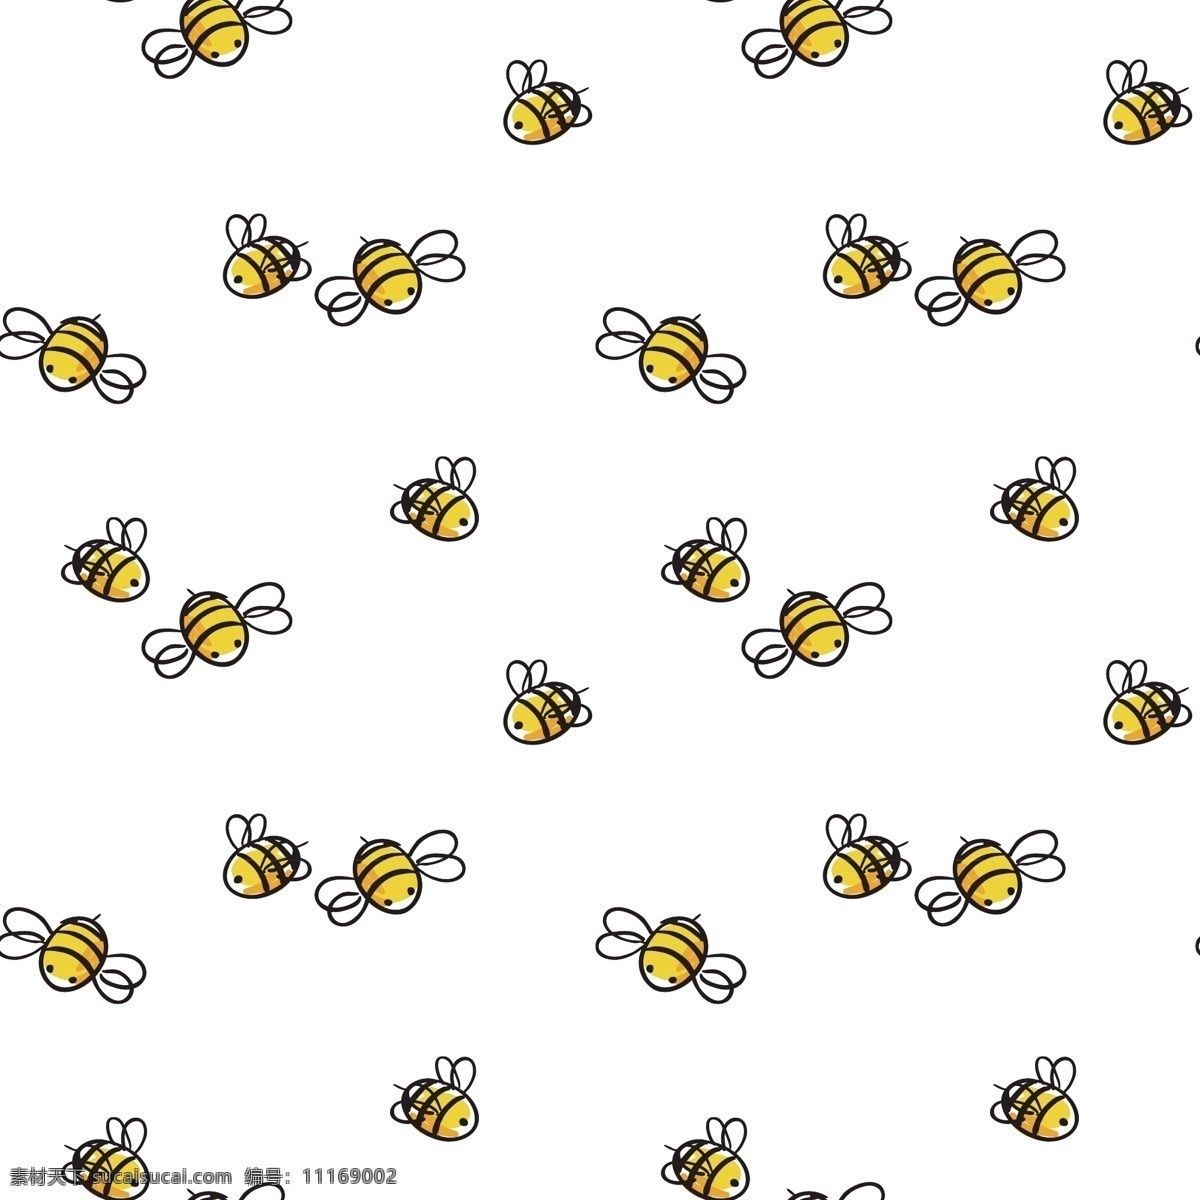 小蜜蜂二十四 小蜜蜂 小蜜蜂图标 小蜜蜂素材 小 蜜蜂 logo 小蜜蜂图案 小蜜蜂图片 小蜜蜂设计 蜜蜂设计 蜜蜂logo 蜜蜂图标 蜜蜂图片 蜜蜂素材 昆虫 昆虫设计 昆虫图标 昆虫logo 蜂蜜 蜂蜜logo 吉祥物 吉祥物图标 吉祥物标志 蜂王 小蜜蜂满印 床单印花 服装印花 强制印花 包装印花 包装设计